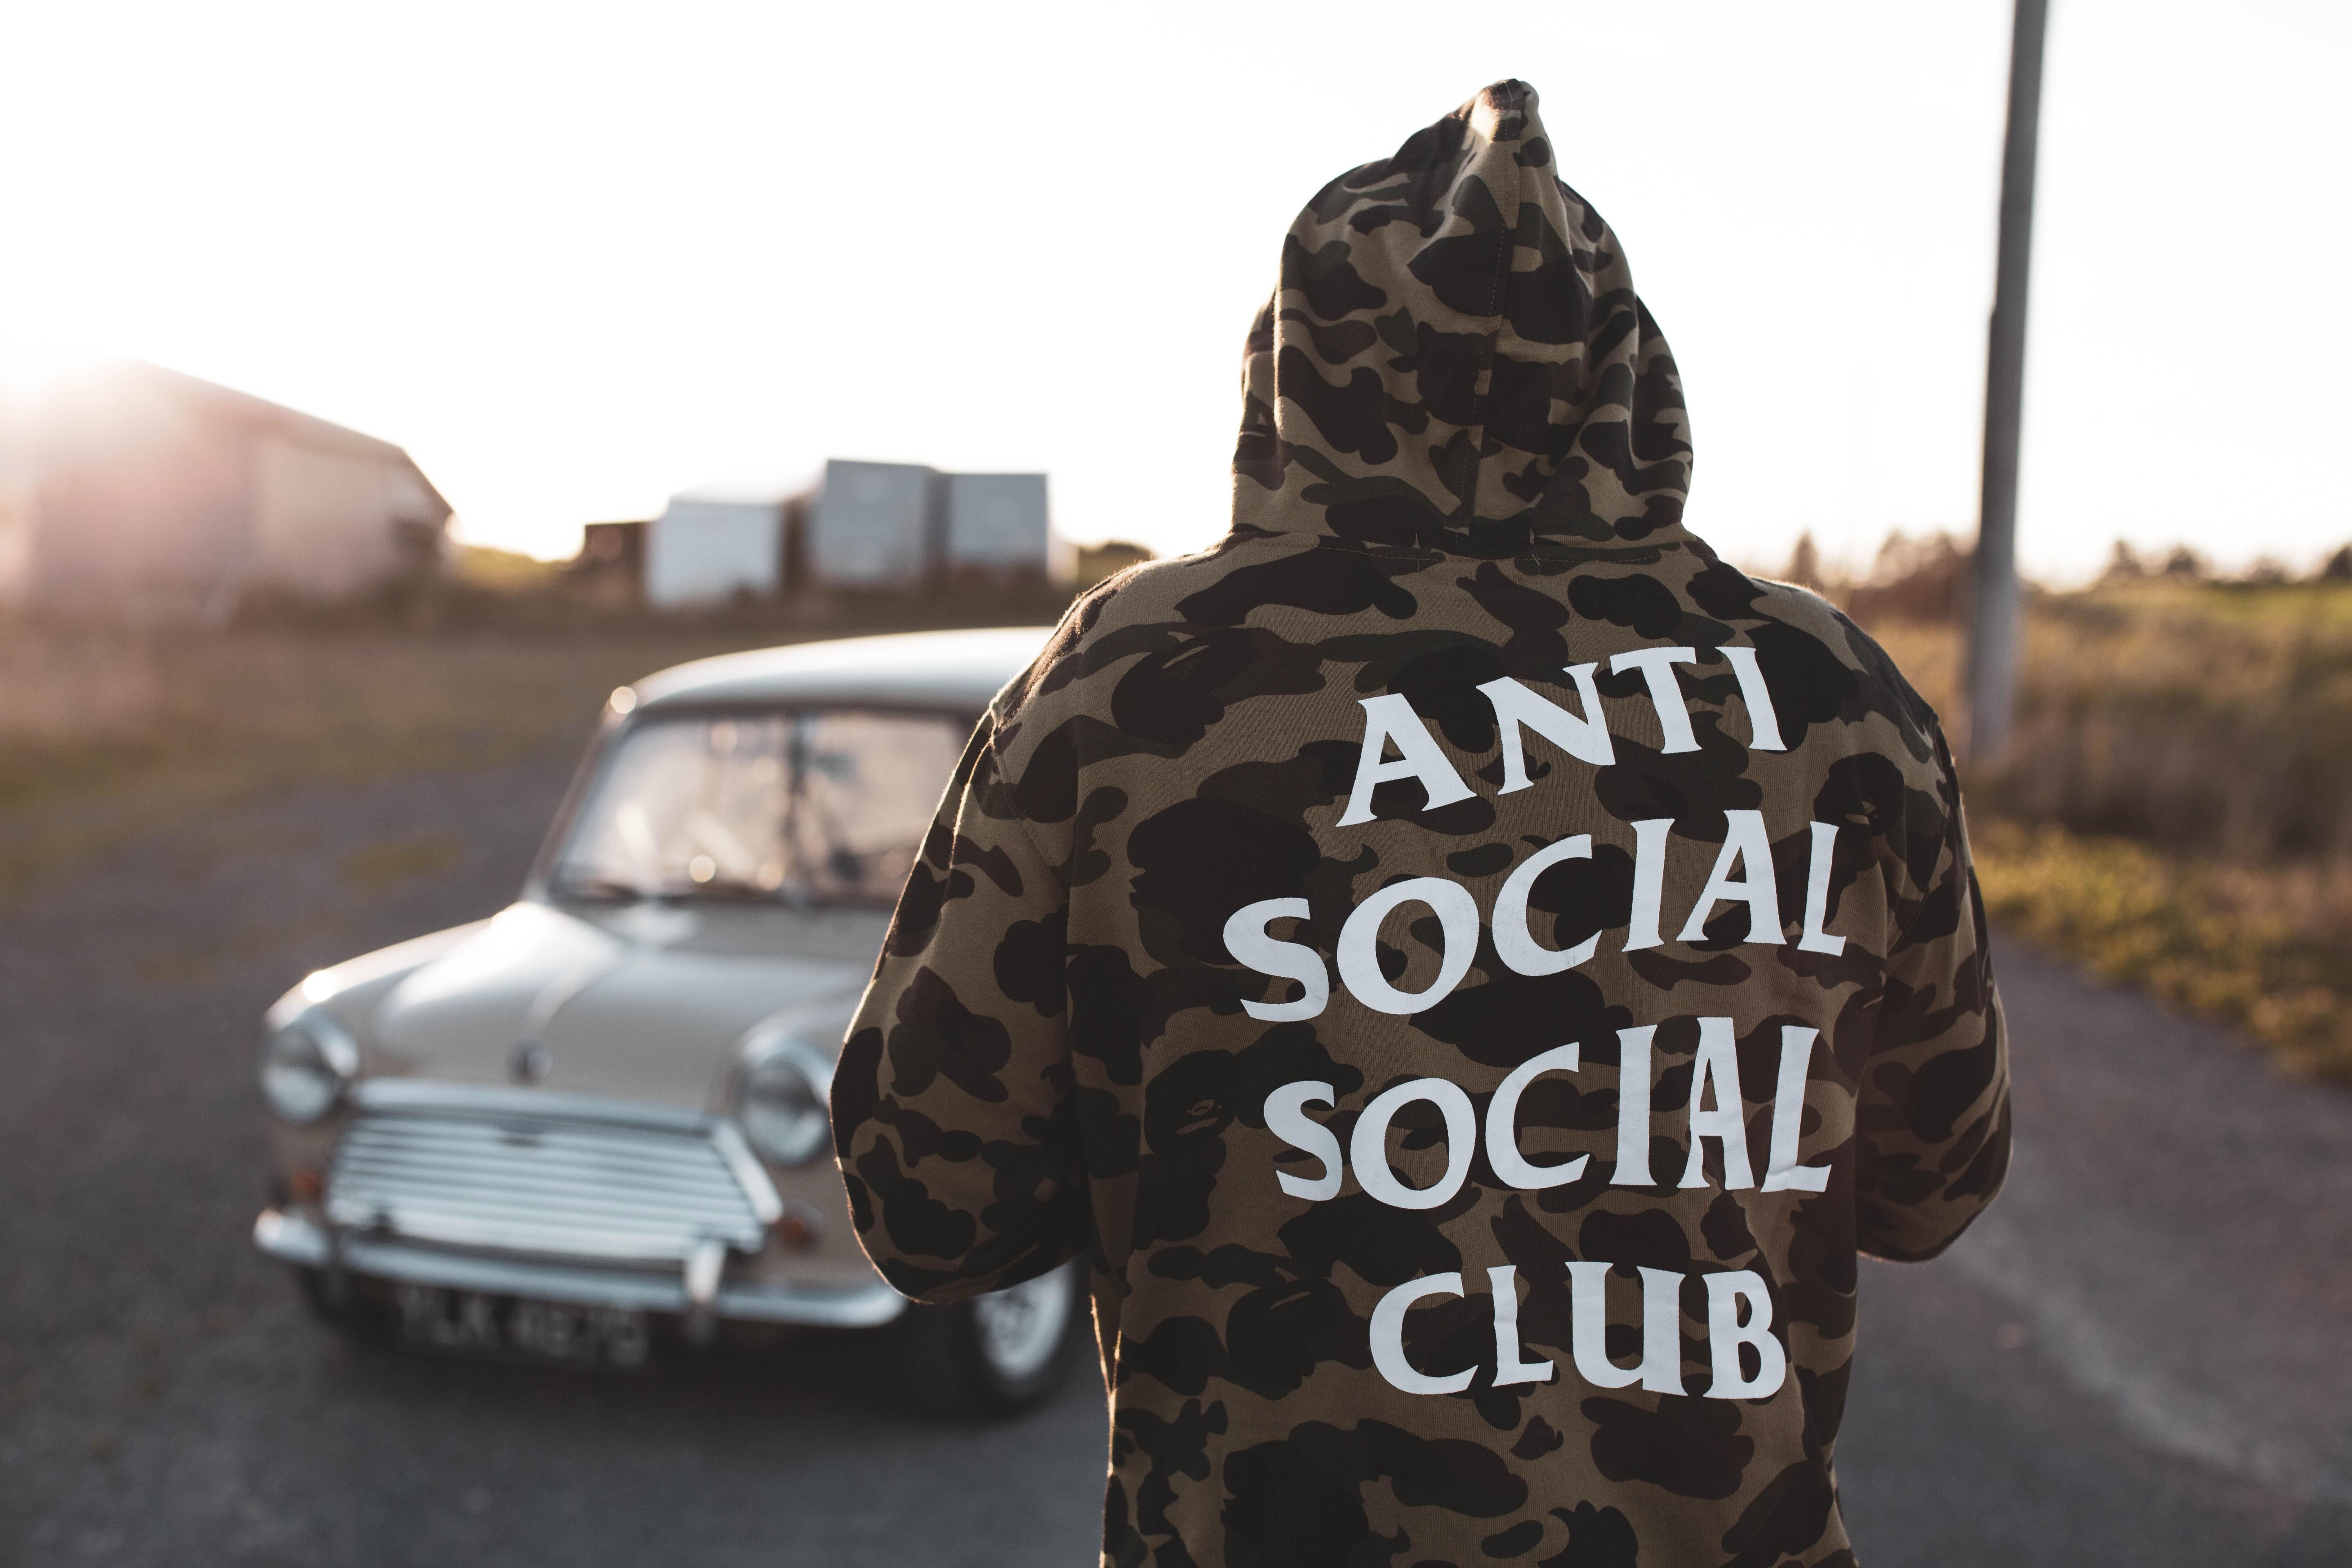 Egy terepmintás pulóveres férfi háttal áll a kamerának, nézi az autóját, kapucni van a fején, a pulcsin antiszociális közösségi klub felirat látható